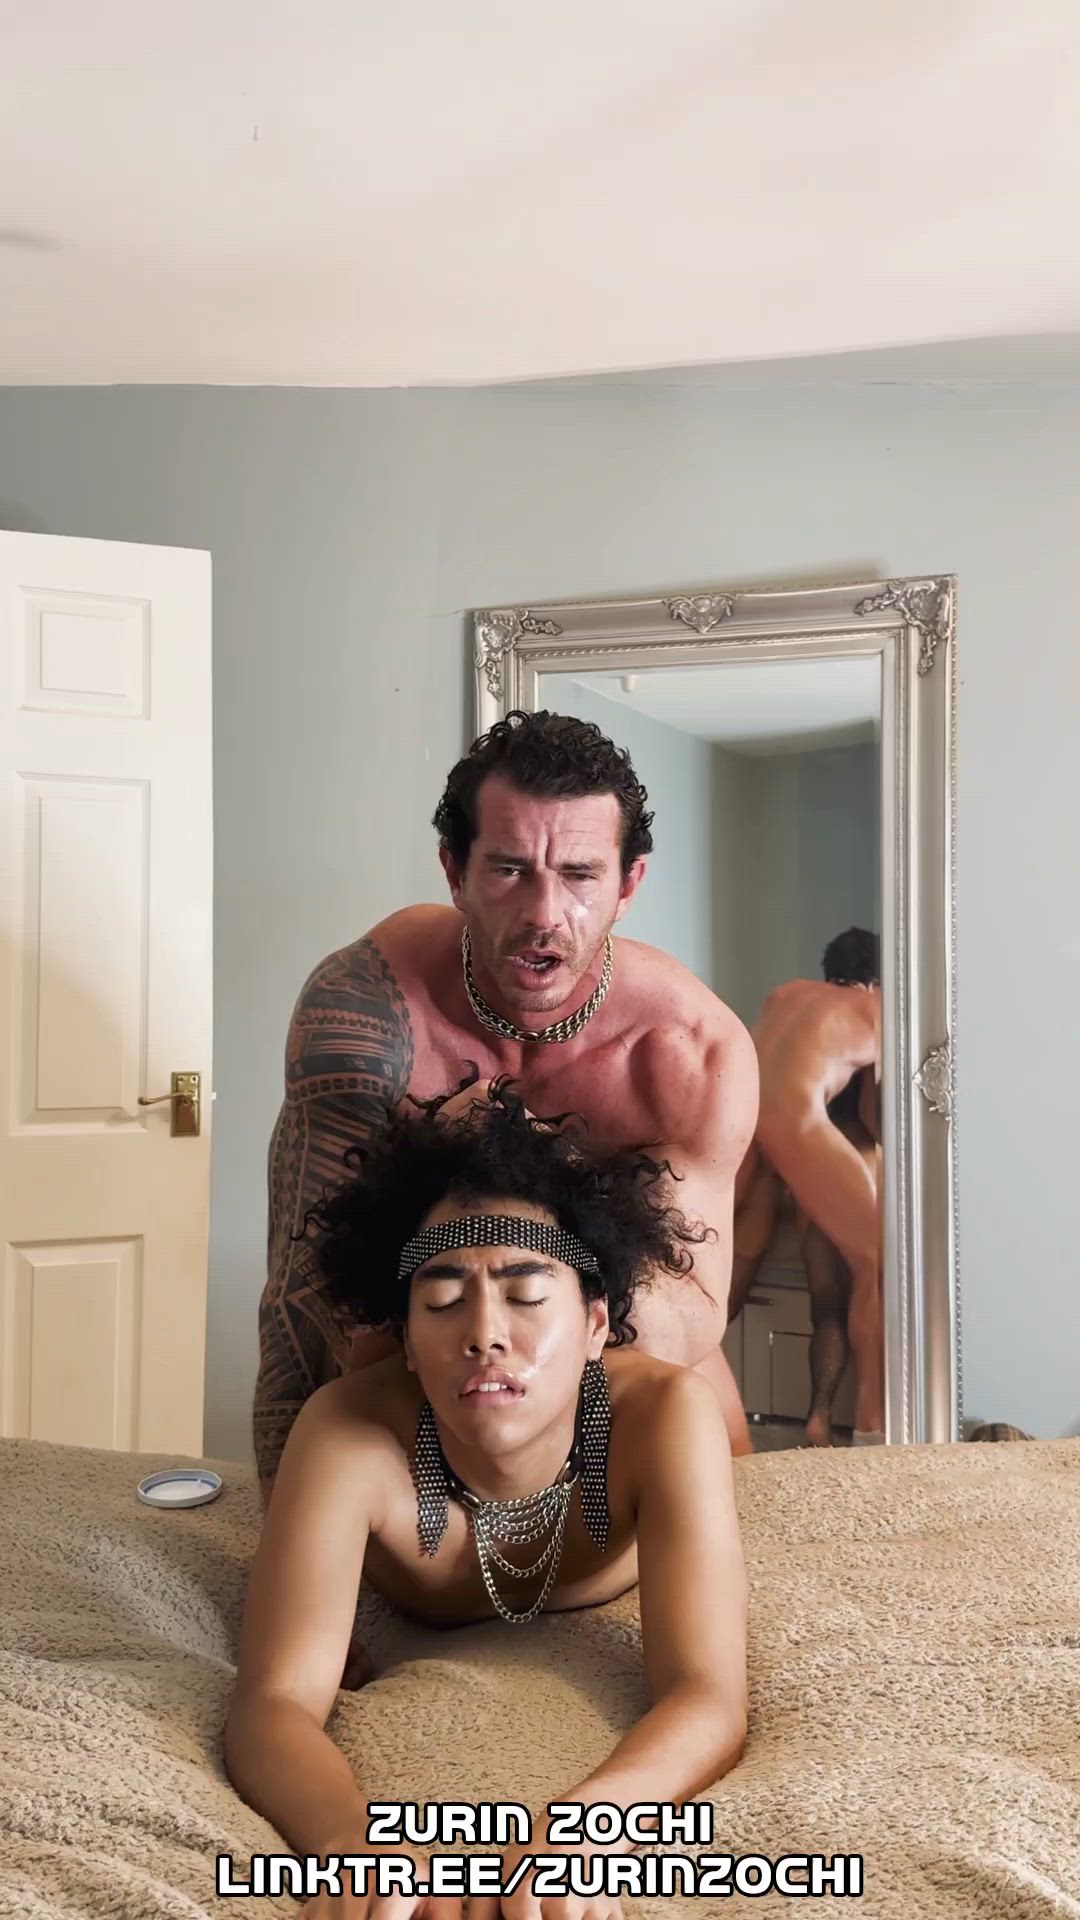 Daddy porn video with onlyfans model zurinzochi <strong>@zurinxxx</strong>